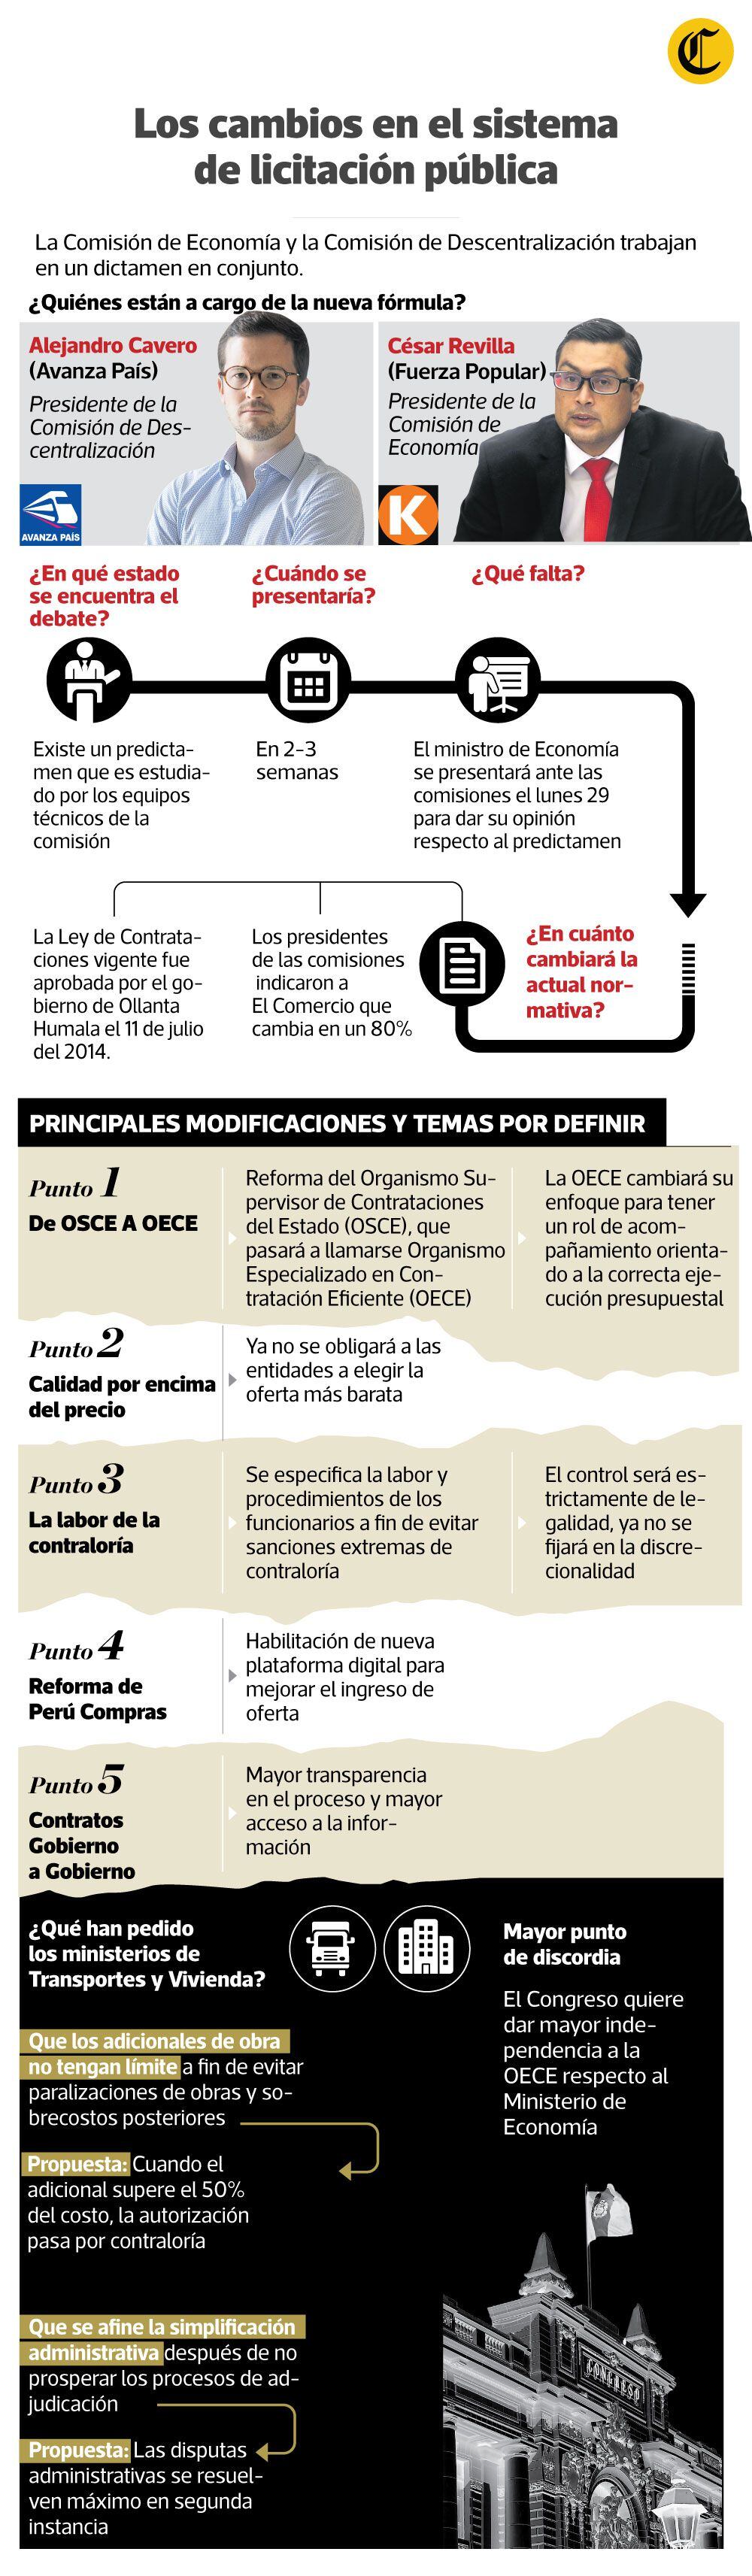 Modificaciones a la Ley de Contrataciones del Estado. (Infografía: Raúl Rodríguez)